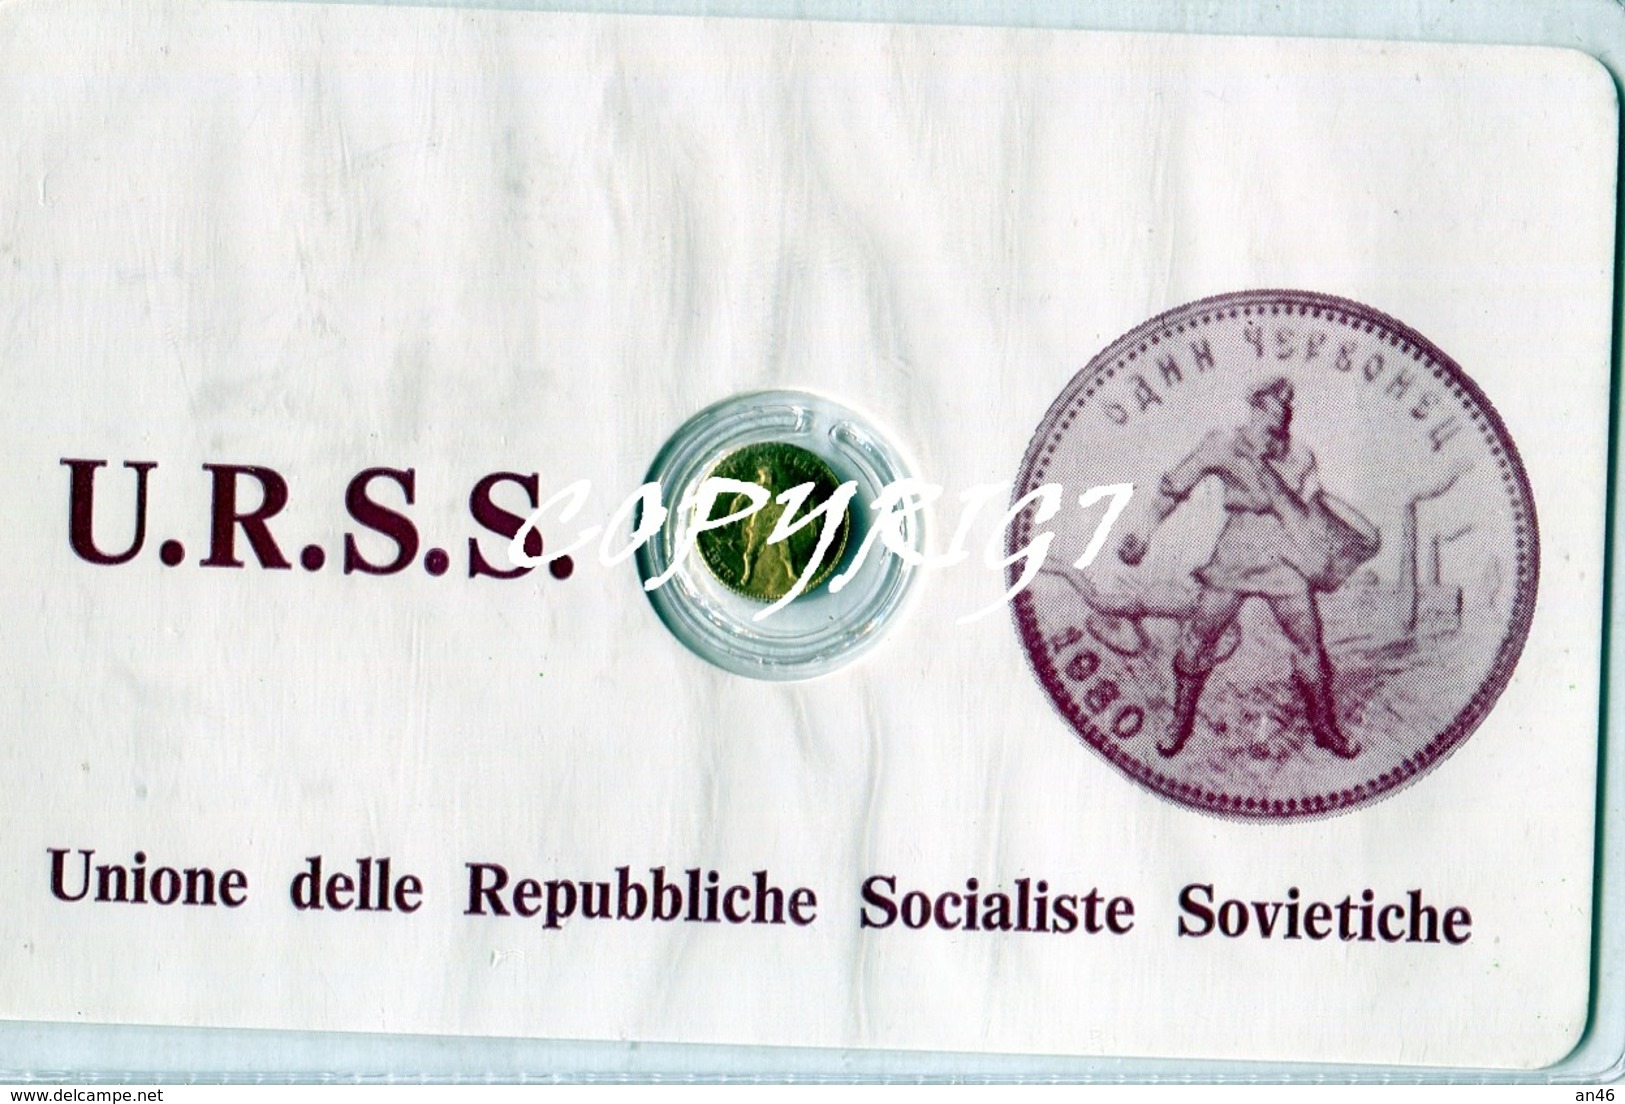 TESSERA_TESSERE_DOCUMENTO/I-"U.R.S.S.UNIONE DELLE REPUBBLICHE SOCIALISTE SOVIET"CONTIENE L'EFFIGIE IN UNA MONETINA D'ORO - Collections